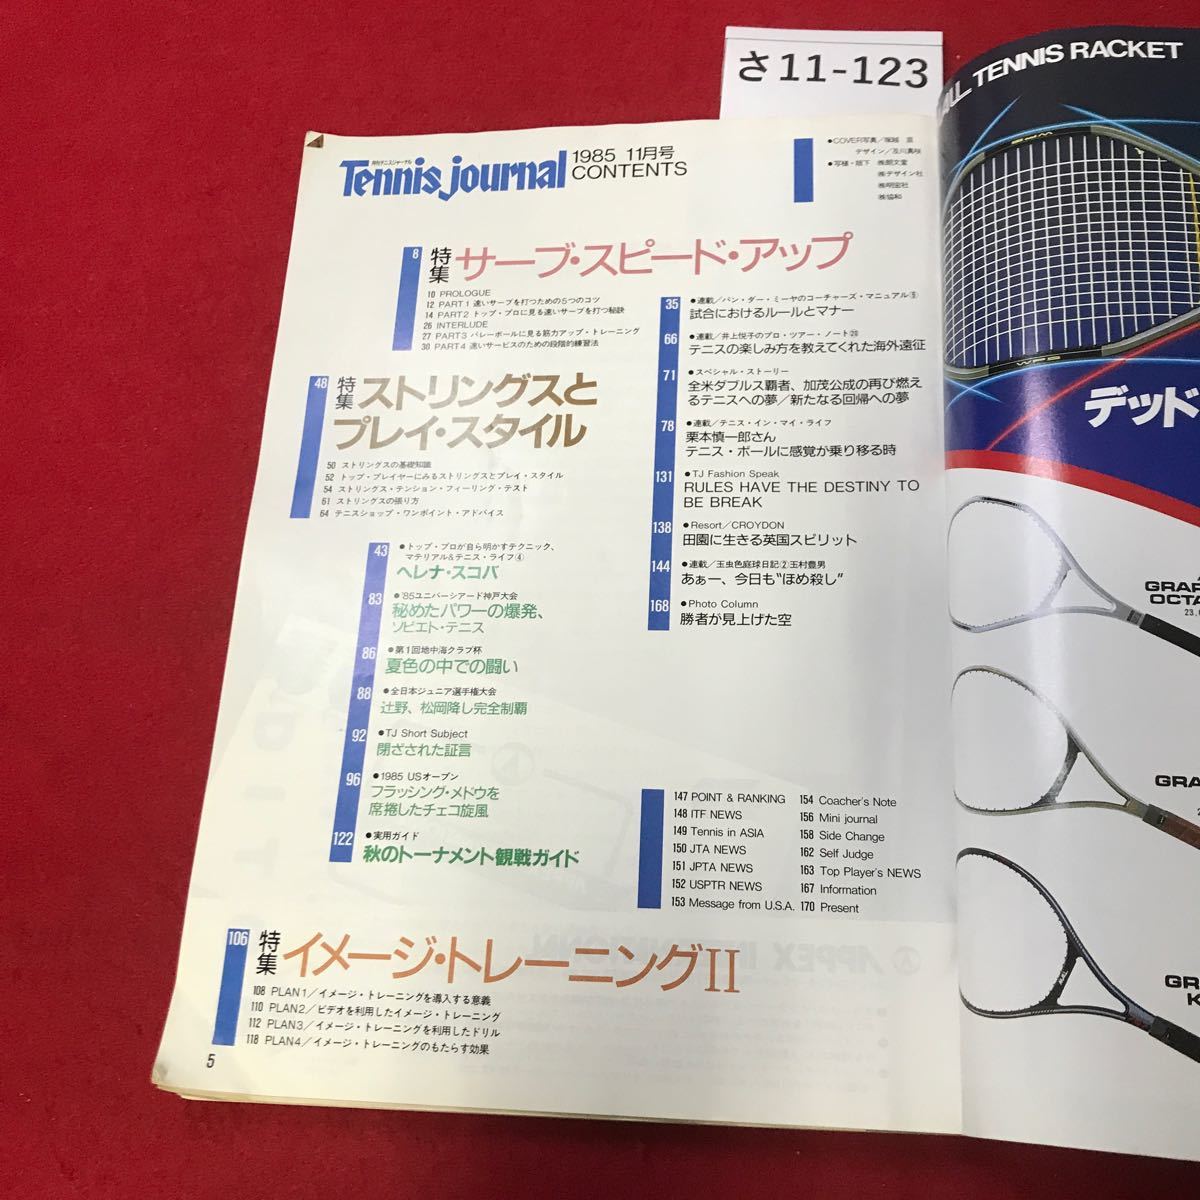 sa11-123 ежемесячный теннис journal 1985/11 специальный выпуск / Saab * скорость * выше 